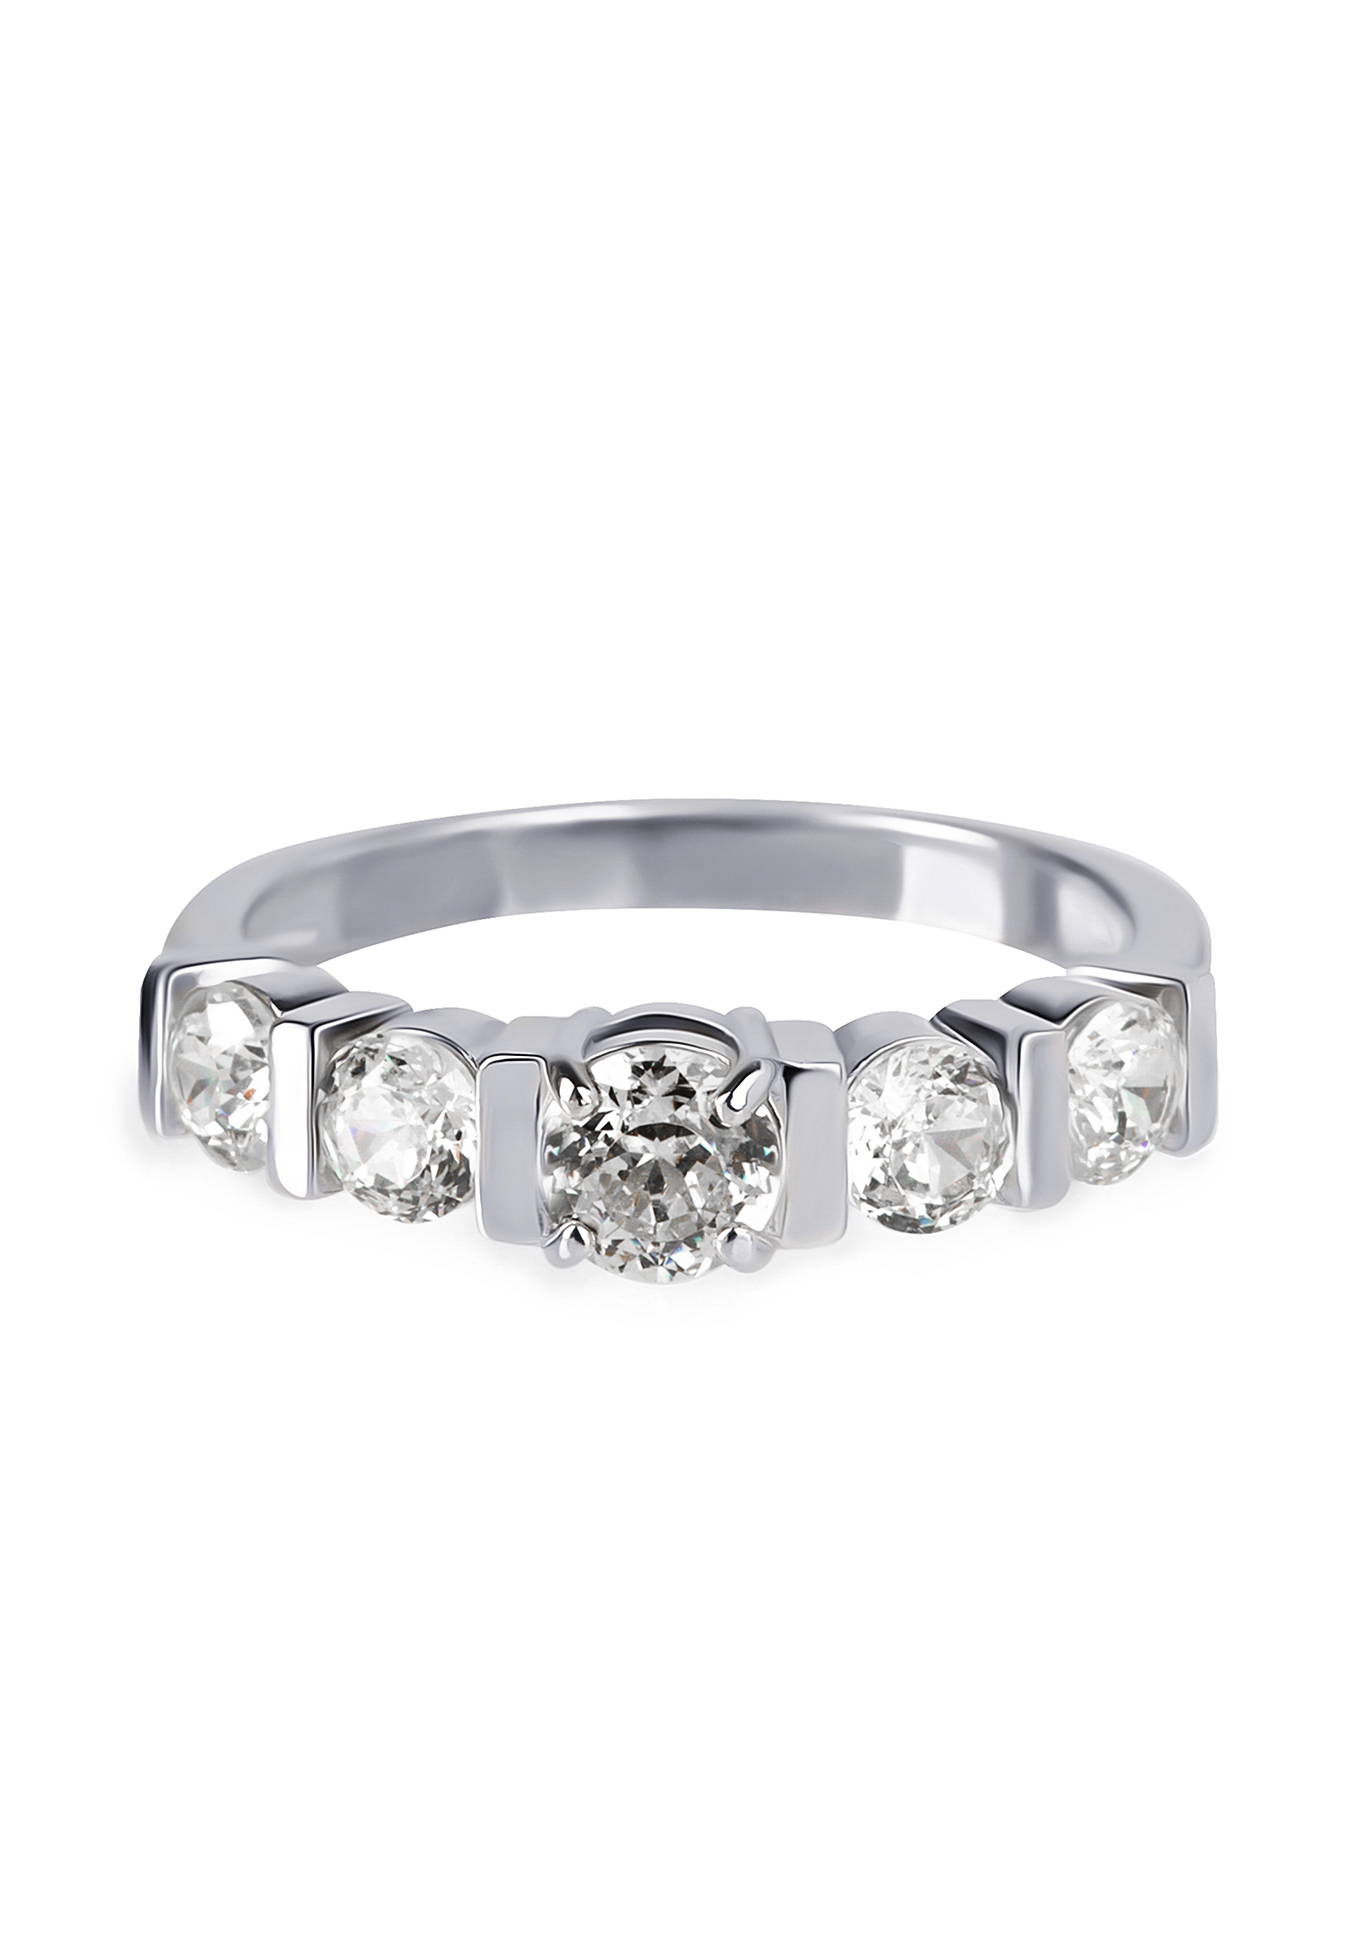 Серебряное кольцо "Эмина" Бриллианит. Серебряная линия, цвет белый, размер 19 сайдстоун - фото 2